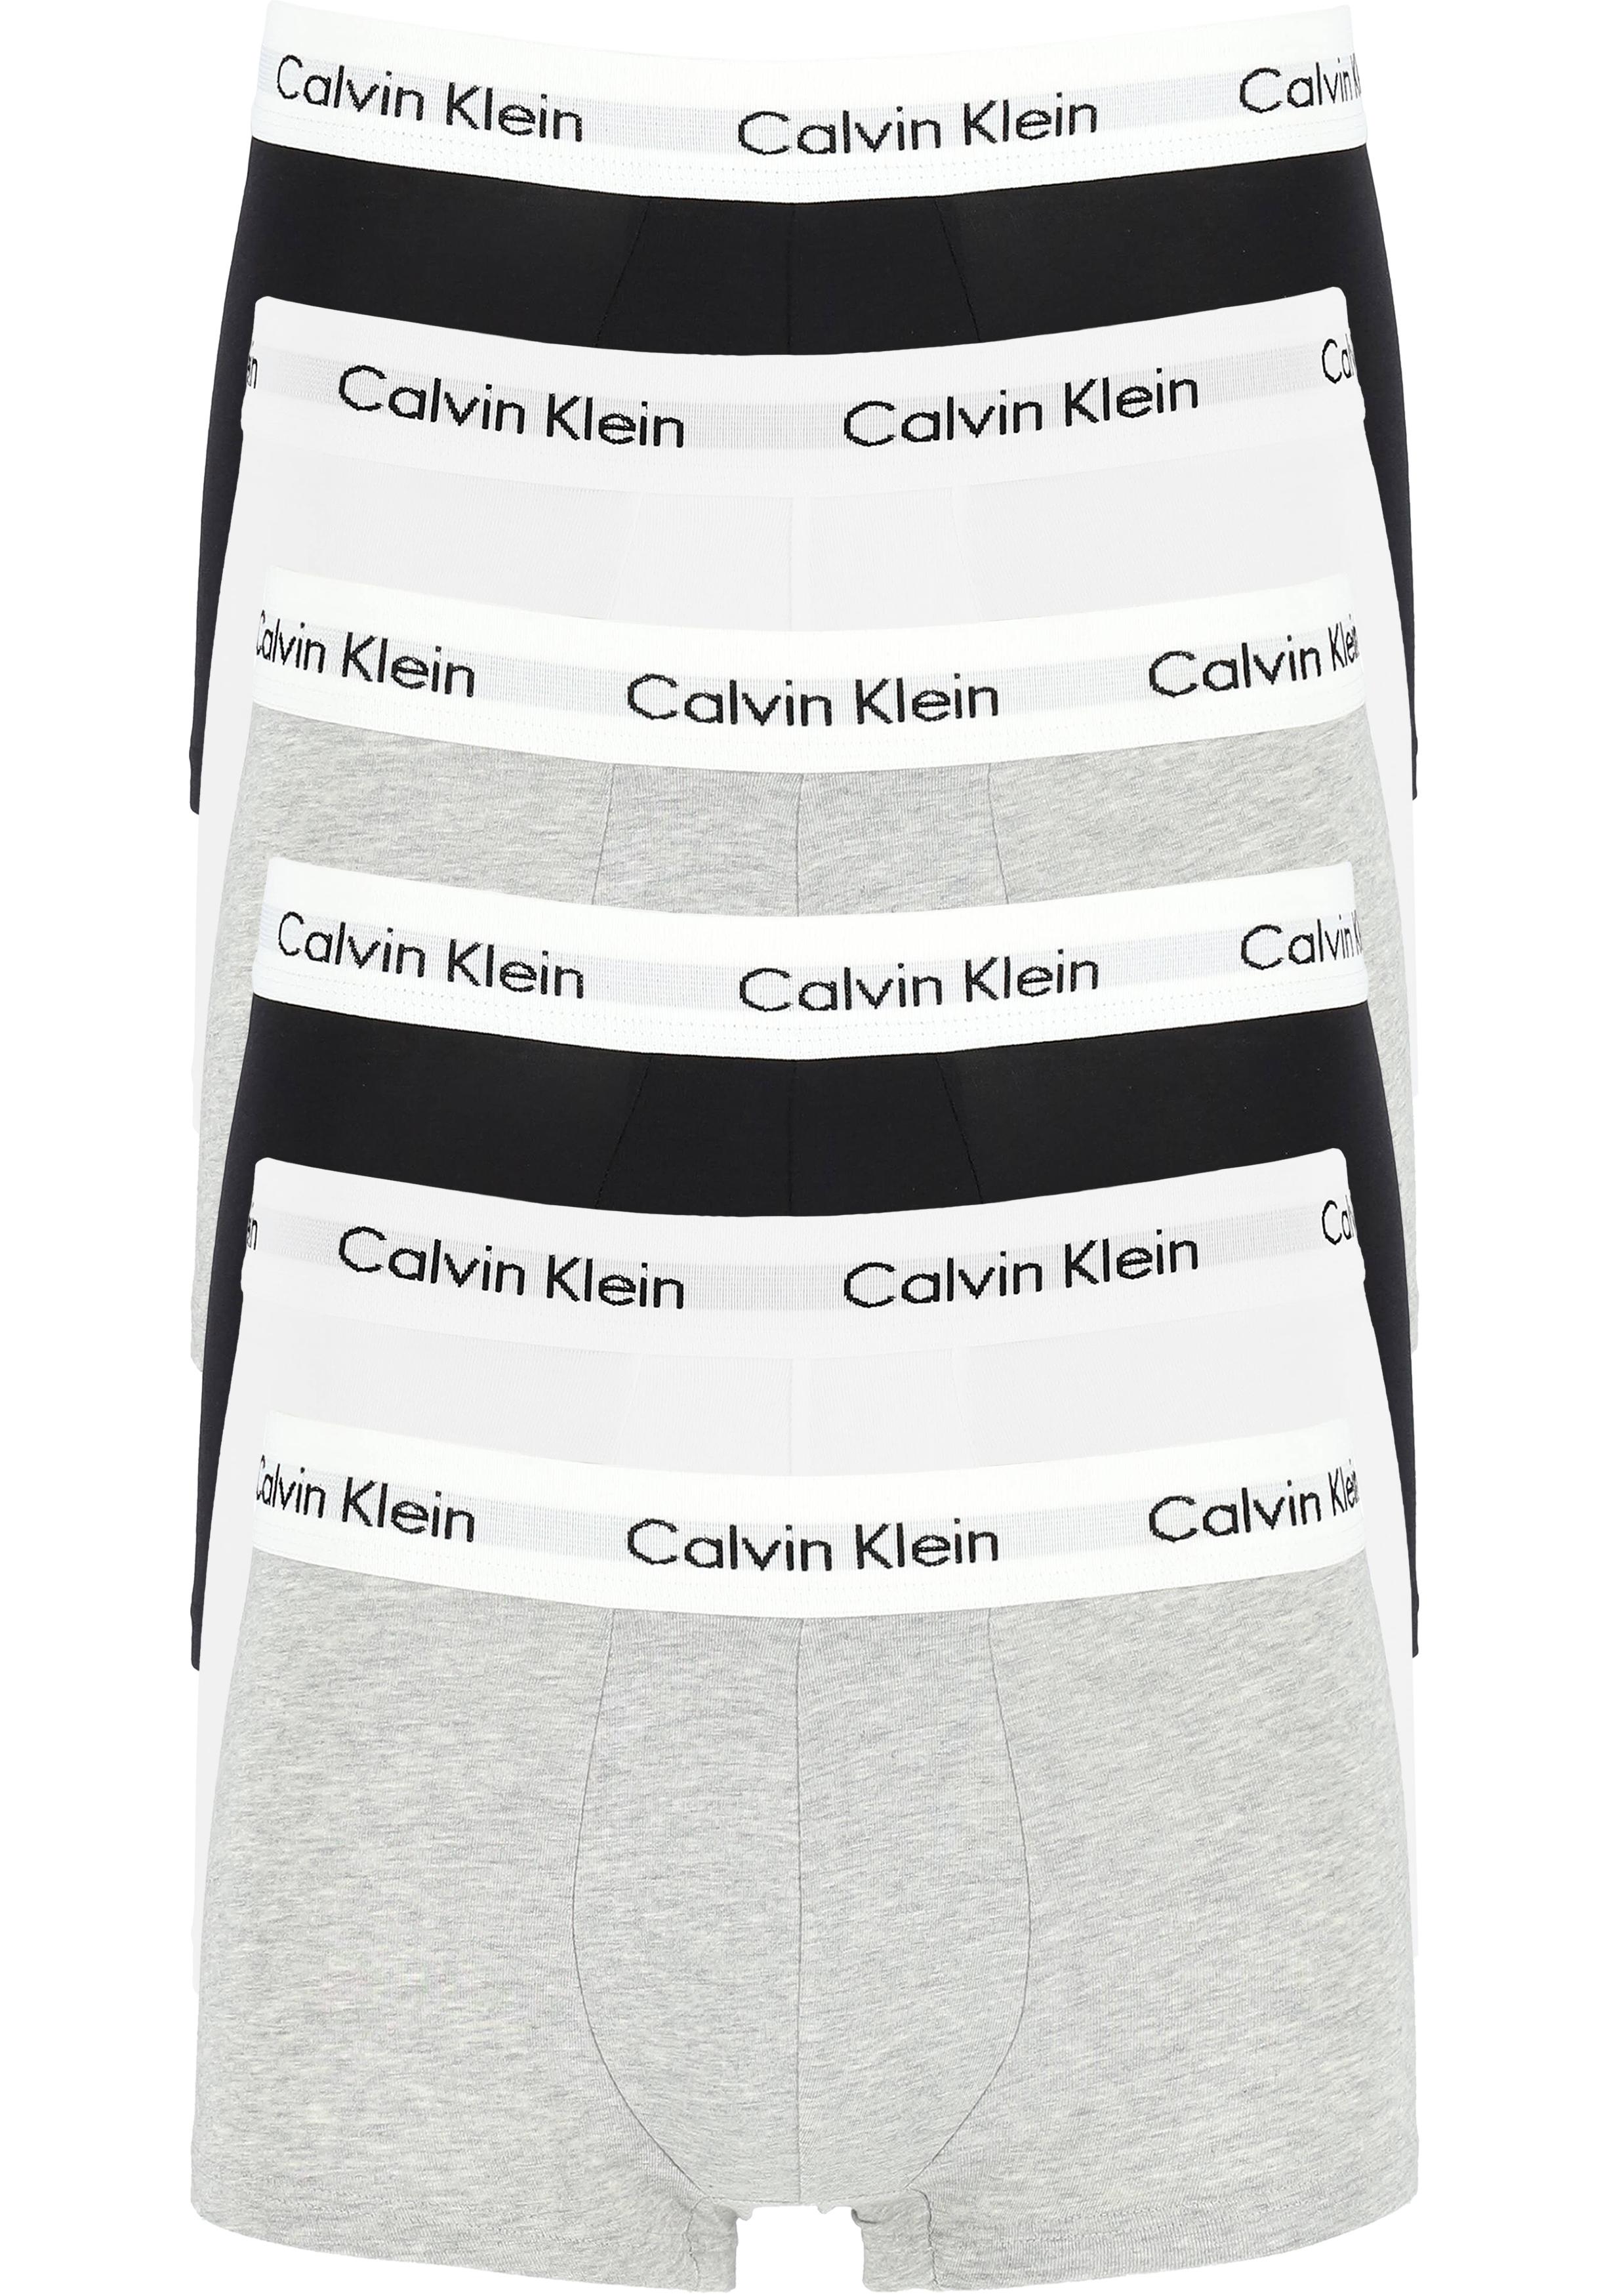 harpoen duurzame grondstof Haast je Actie 6-pack: Calvin Klein low rise trunks, lage heren boxers kort,... -  Shop de nieuwste voorjaarsmode